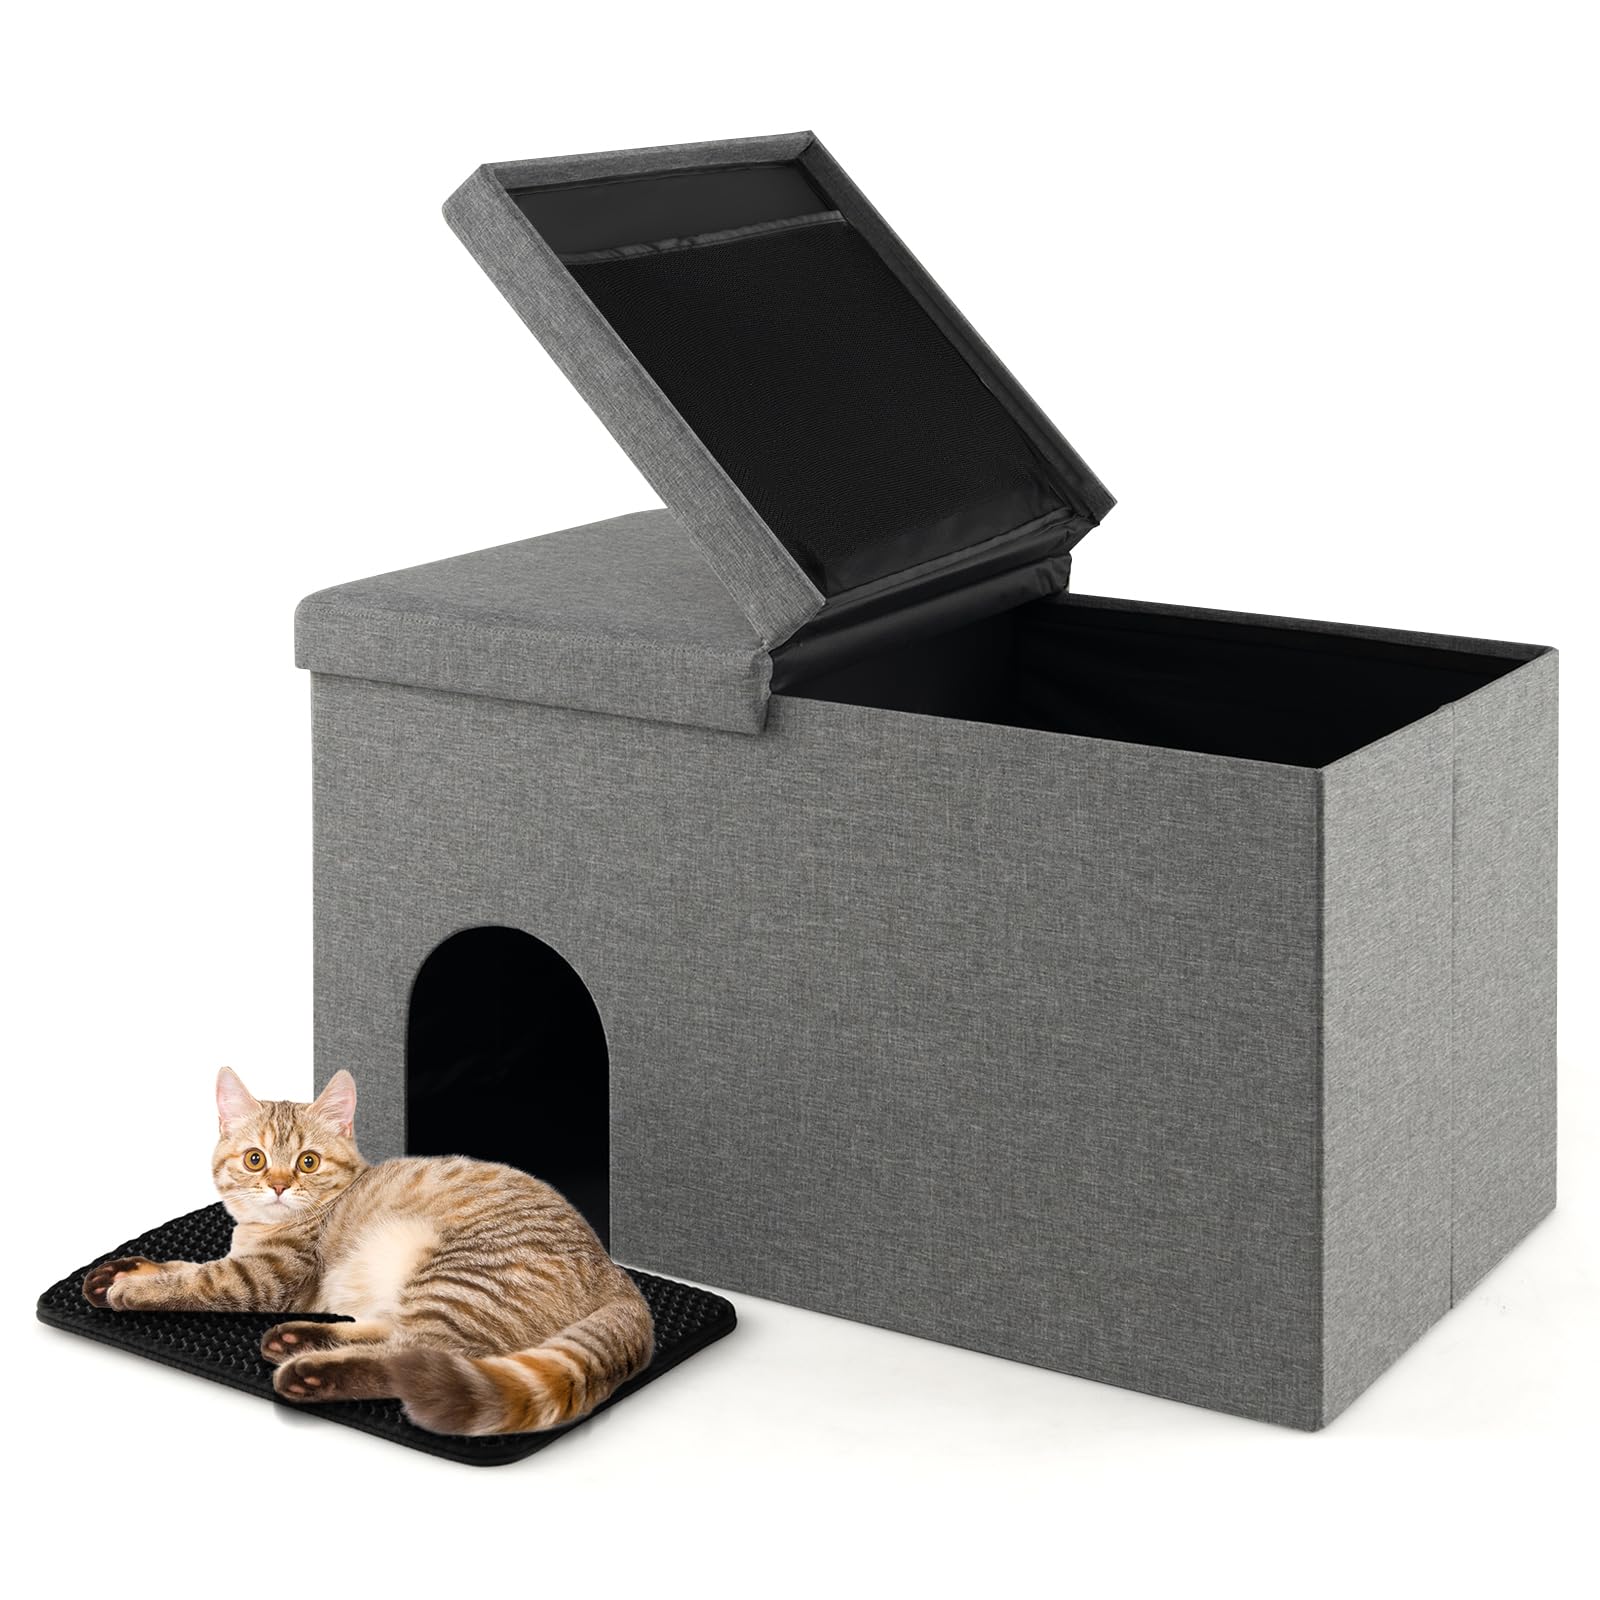 Giantex Cat Litter Box Enclosure - Hidden Cat Litter Box Furniture Ottoman